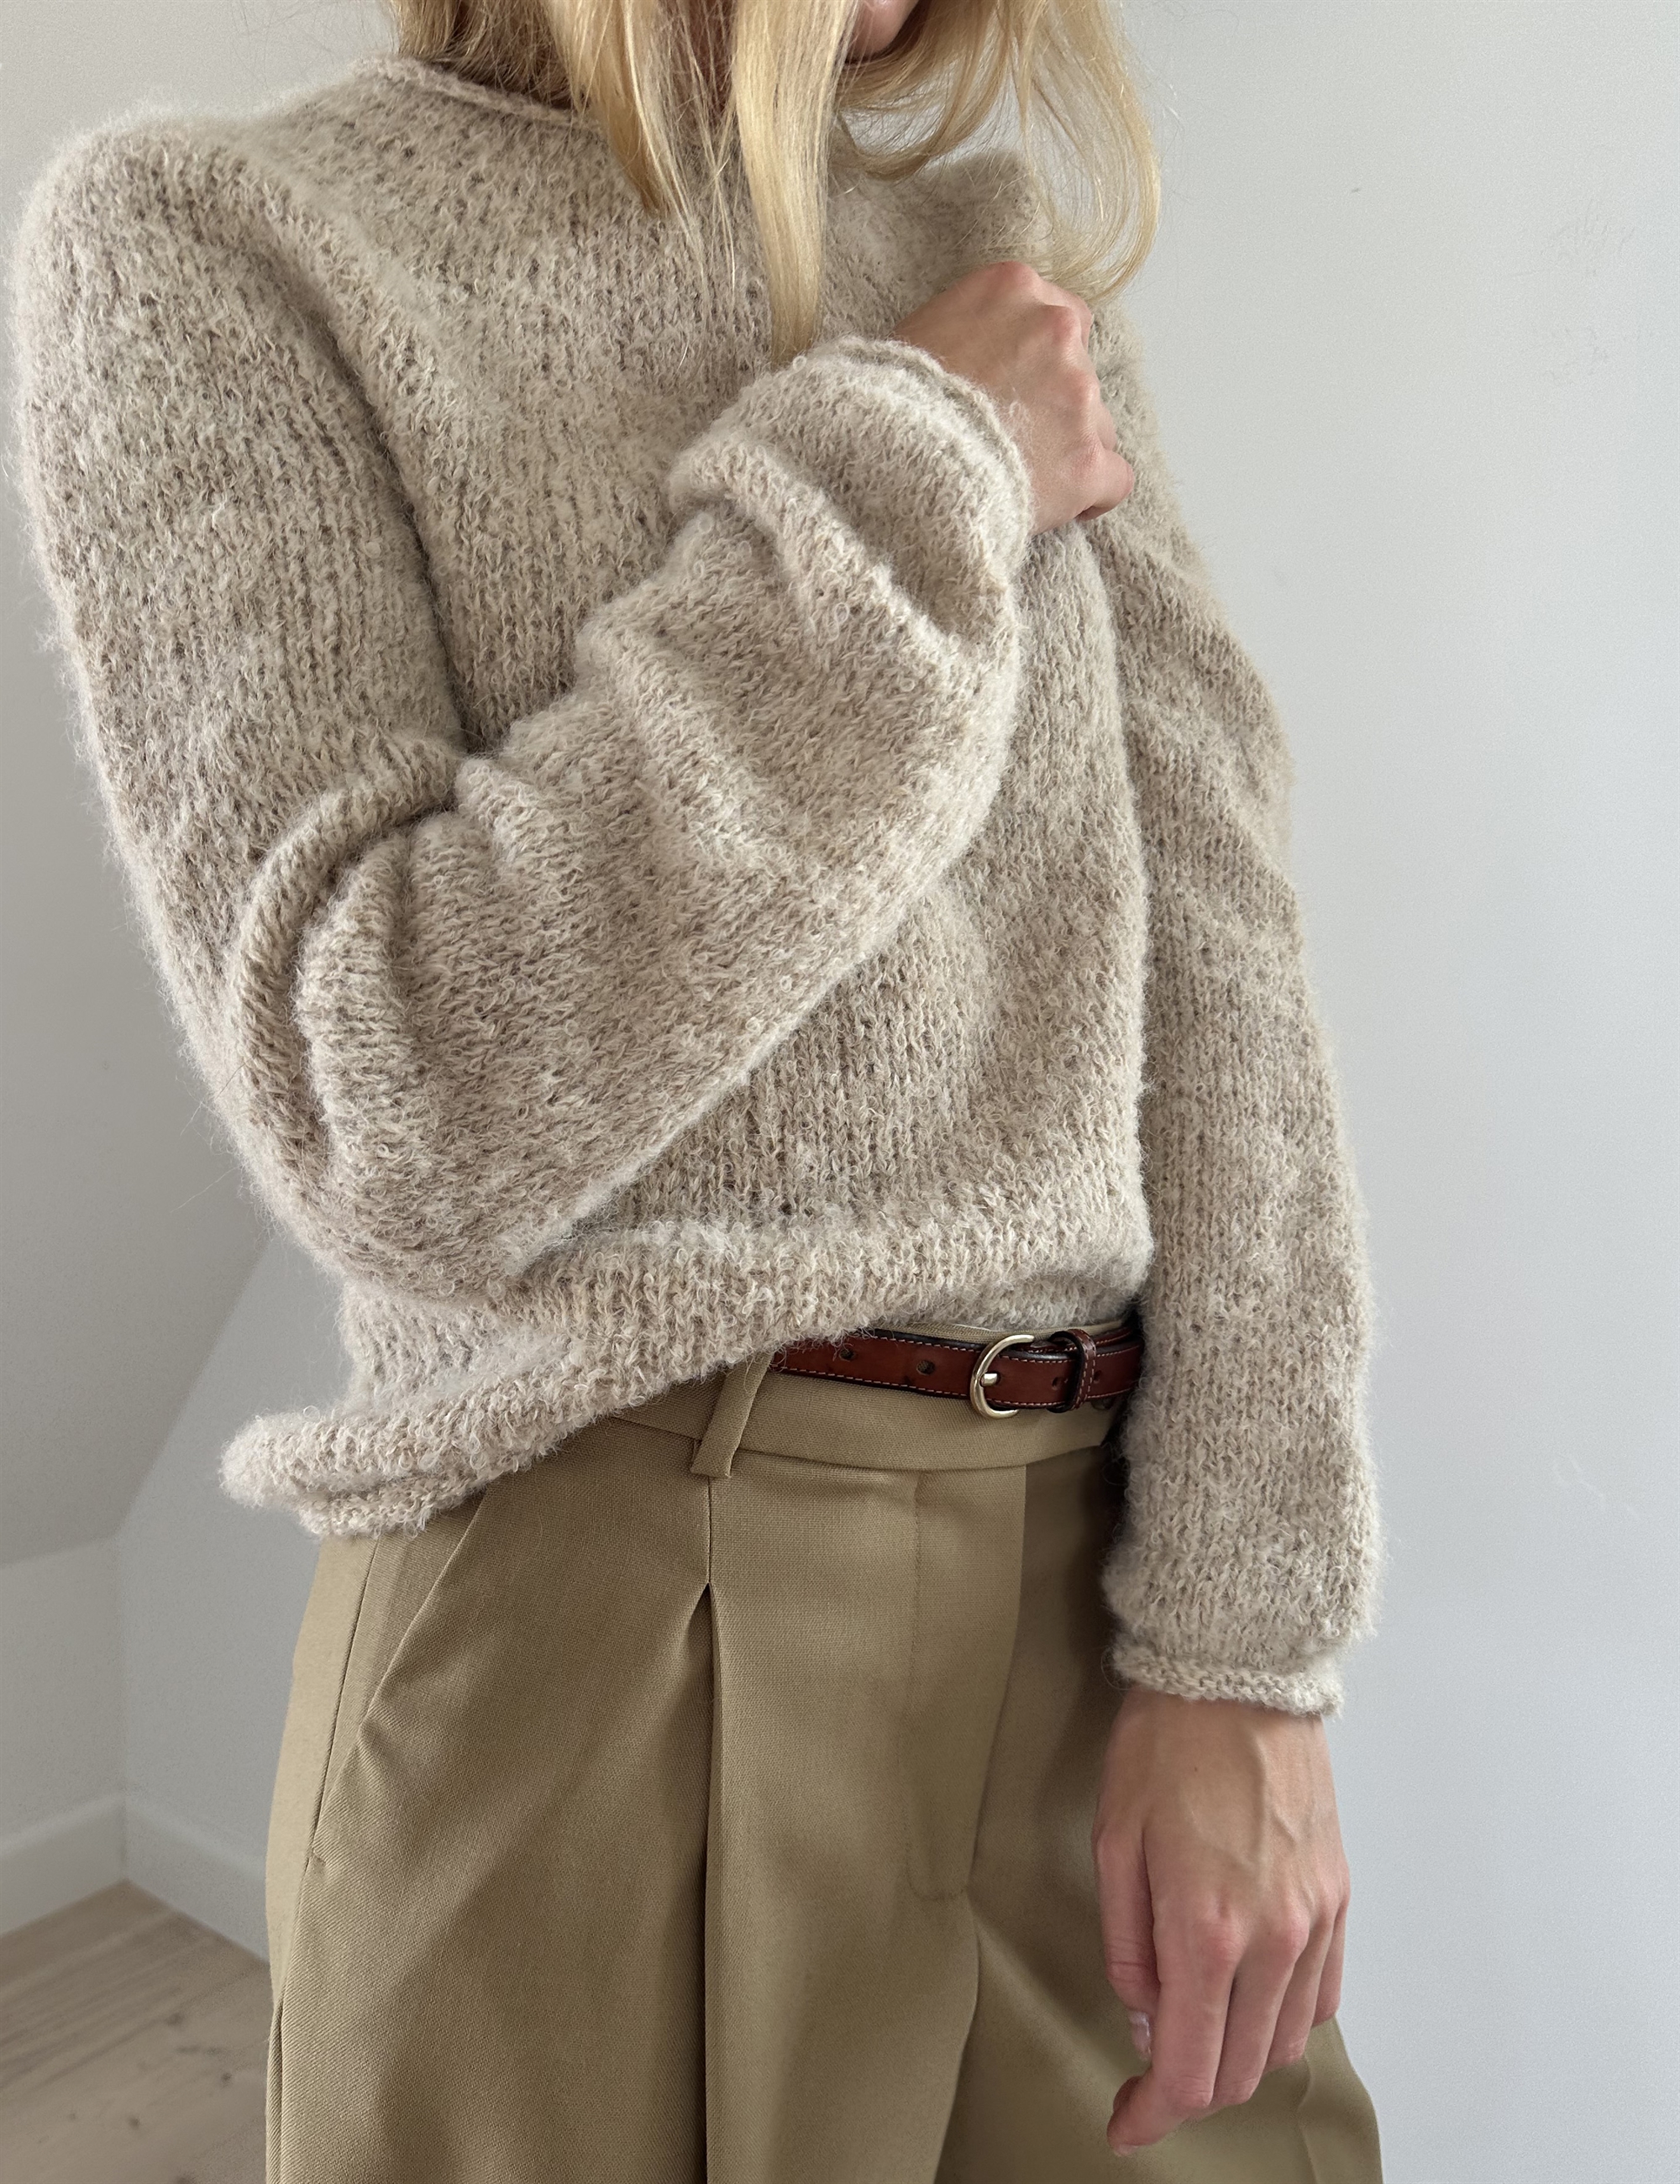 Plain Yoke sweater knitting pattern (english) - le knit